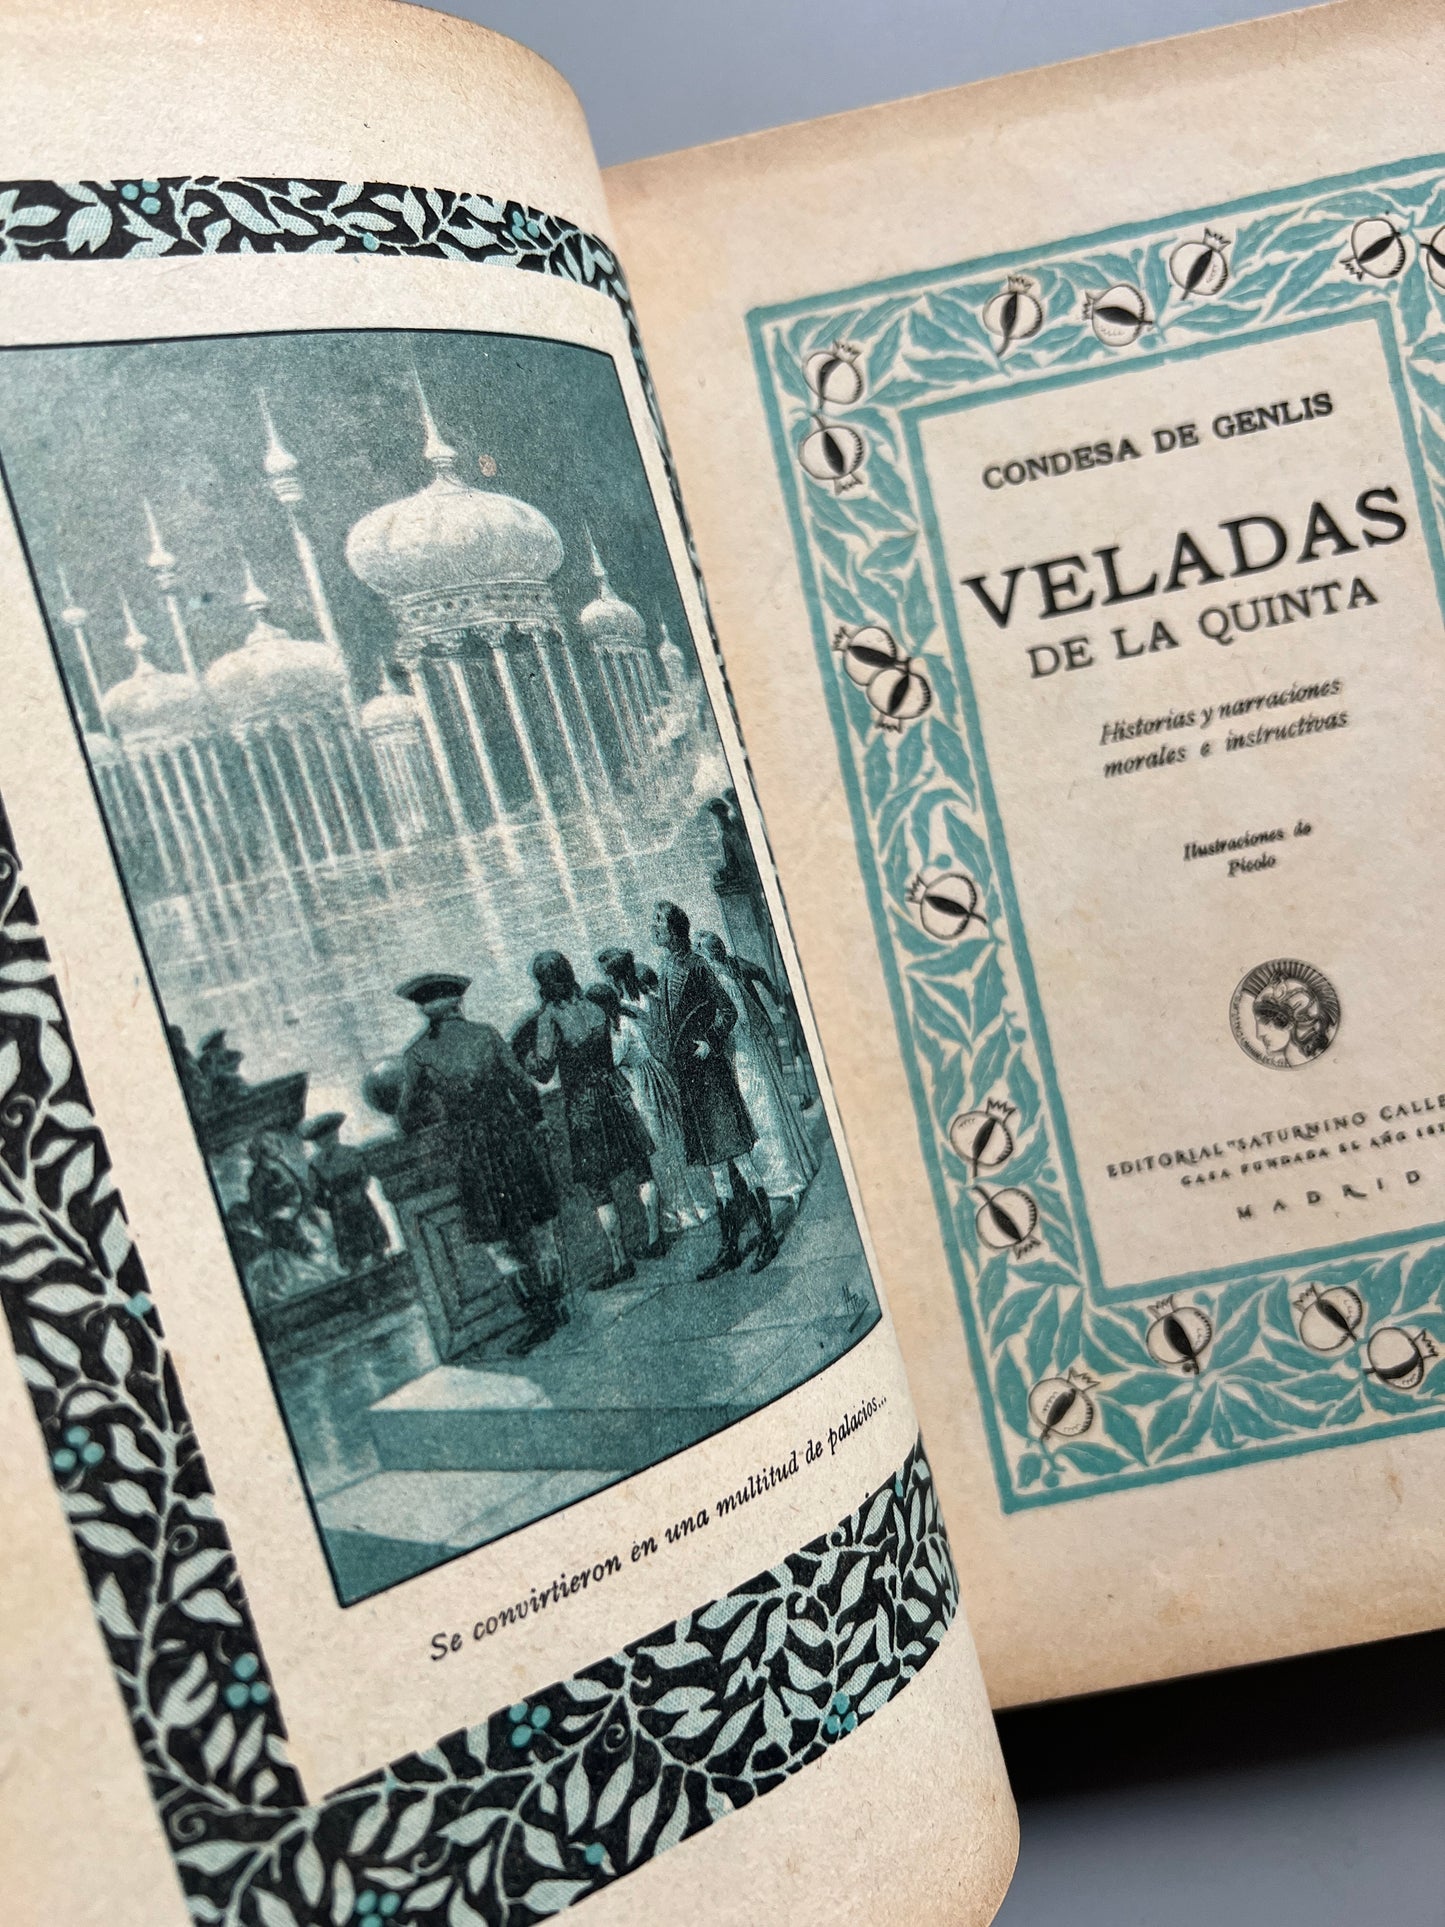 Las veladas de la quinta, Condesa de Genlis - Saturnino Calleja, ca. 1920